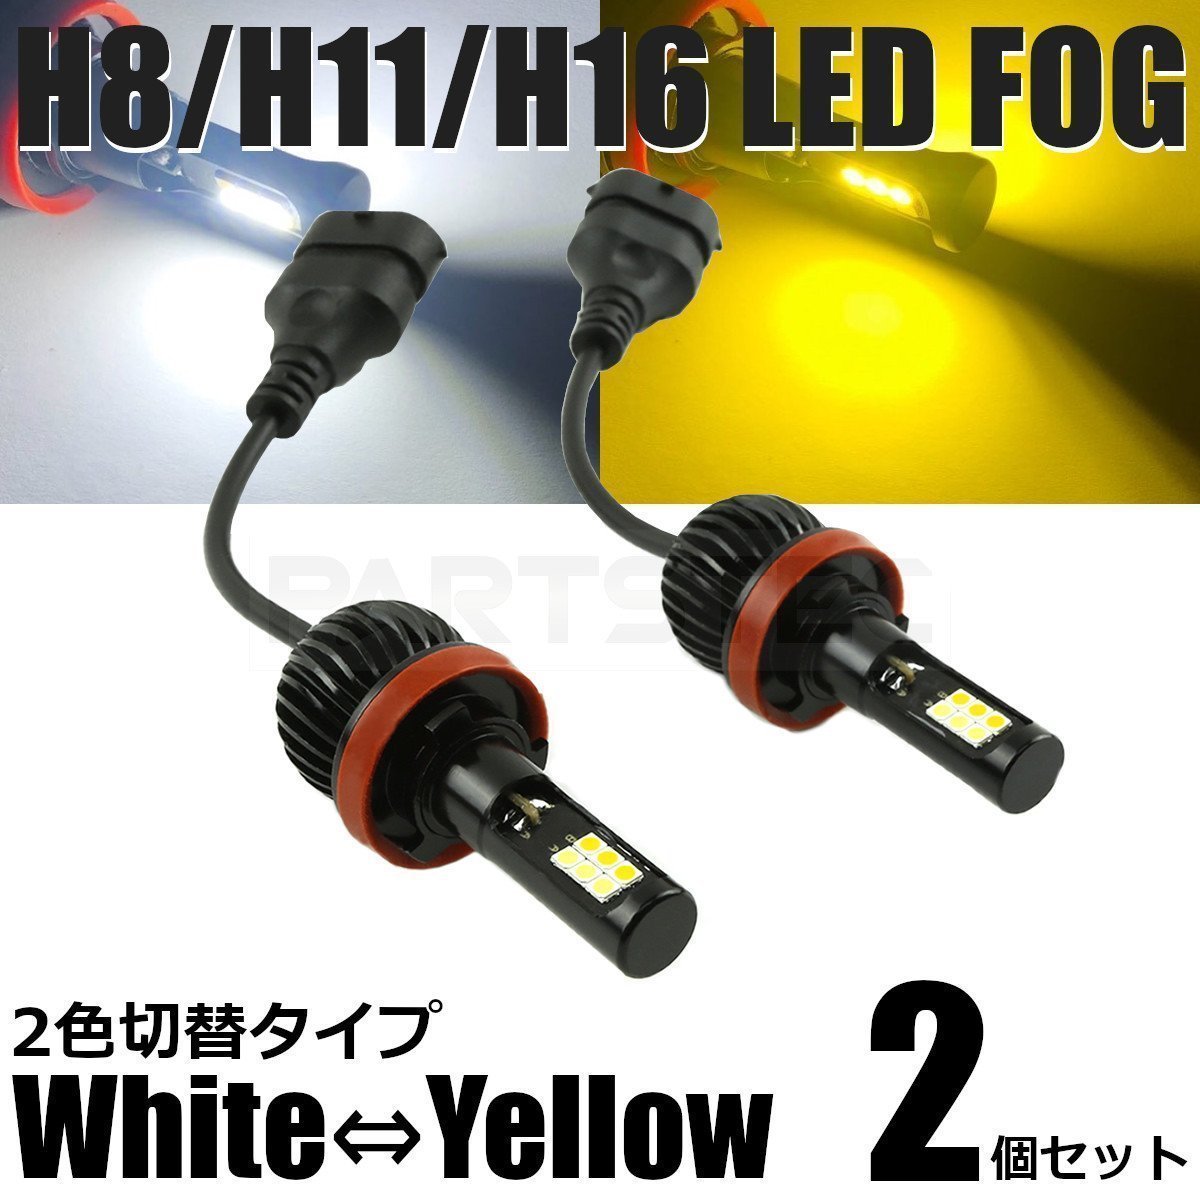 ムーヴカスタム L150 L160 LED フォグ H8/H11/H16 バルブ 2個 2色切替 白/黄色 40W級 5200lm デュアルカラー /134-53 A-1_画像1